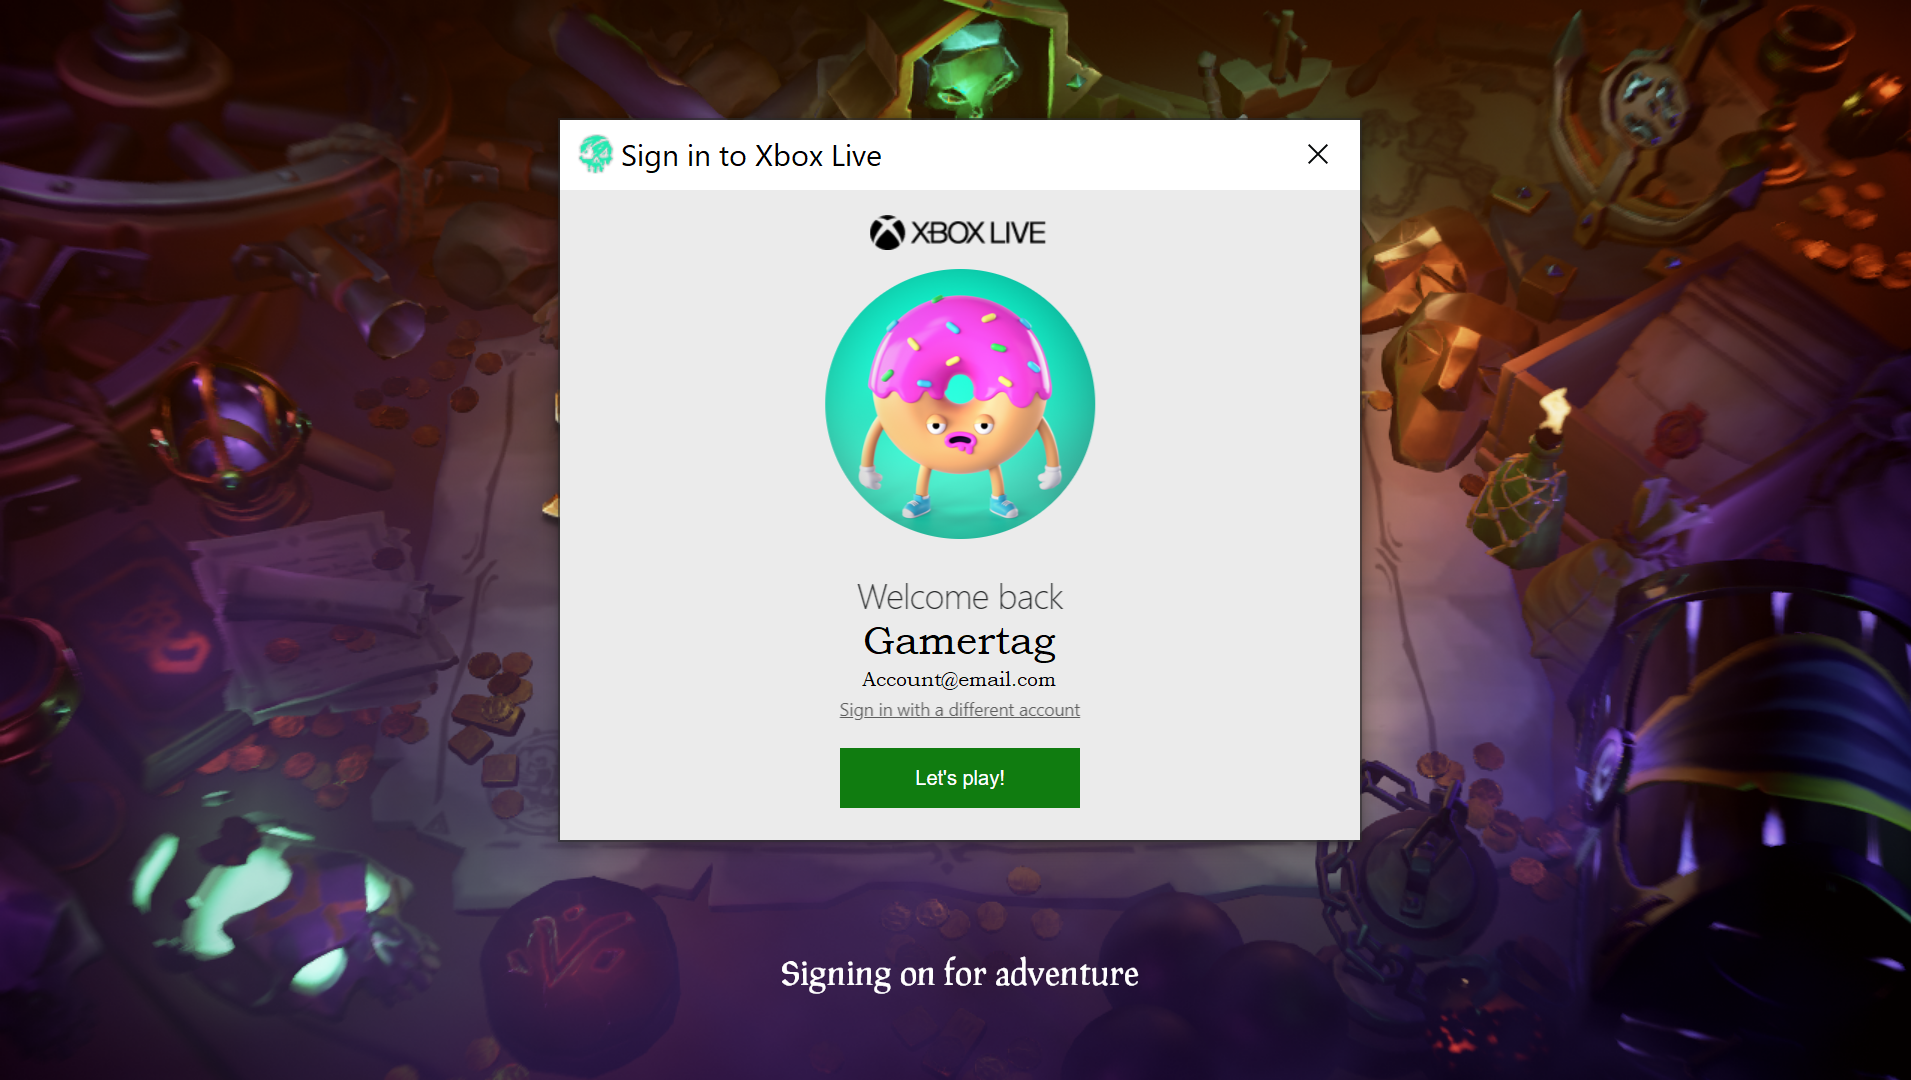 アカウントのサインインに成功した後、Xbox Live への歓迎を示すとともに Xbox Live のゲーマータグを表示するスクリーンショット